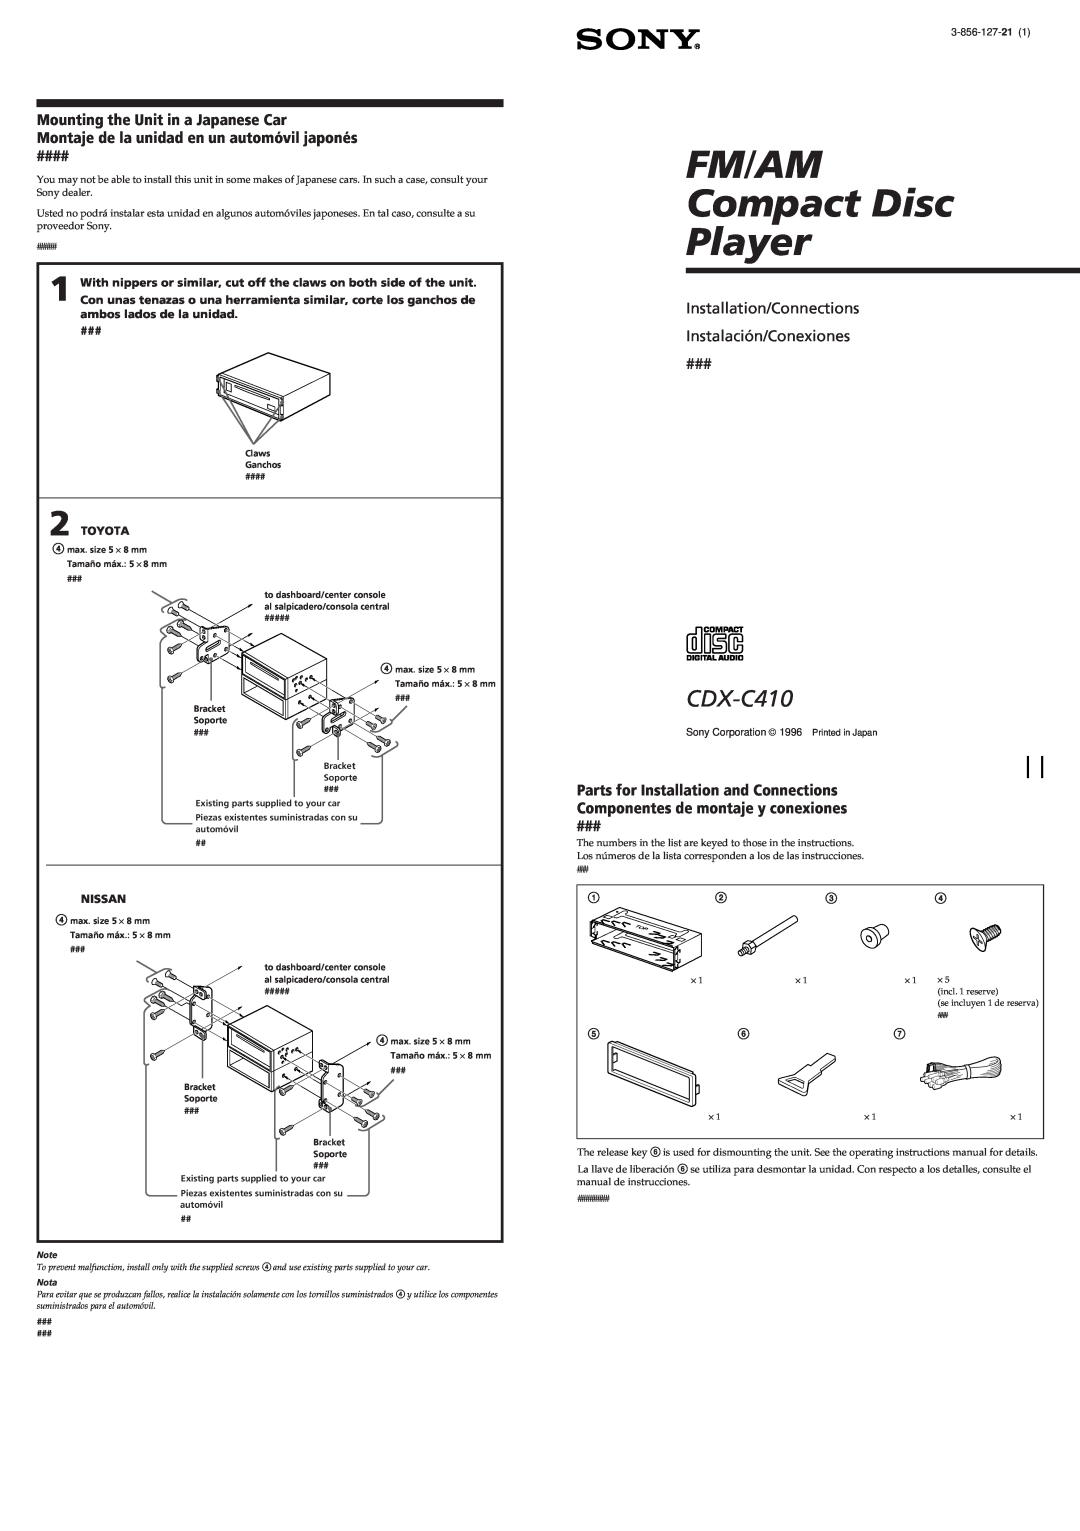 Sony CDX-C410 manual FM/AM Compact Disc Player, Installation/Connections Instalación/Conexiones 